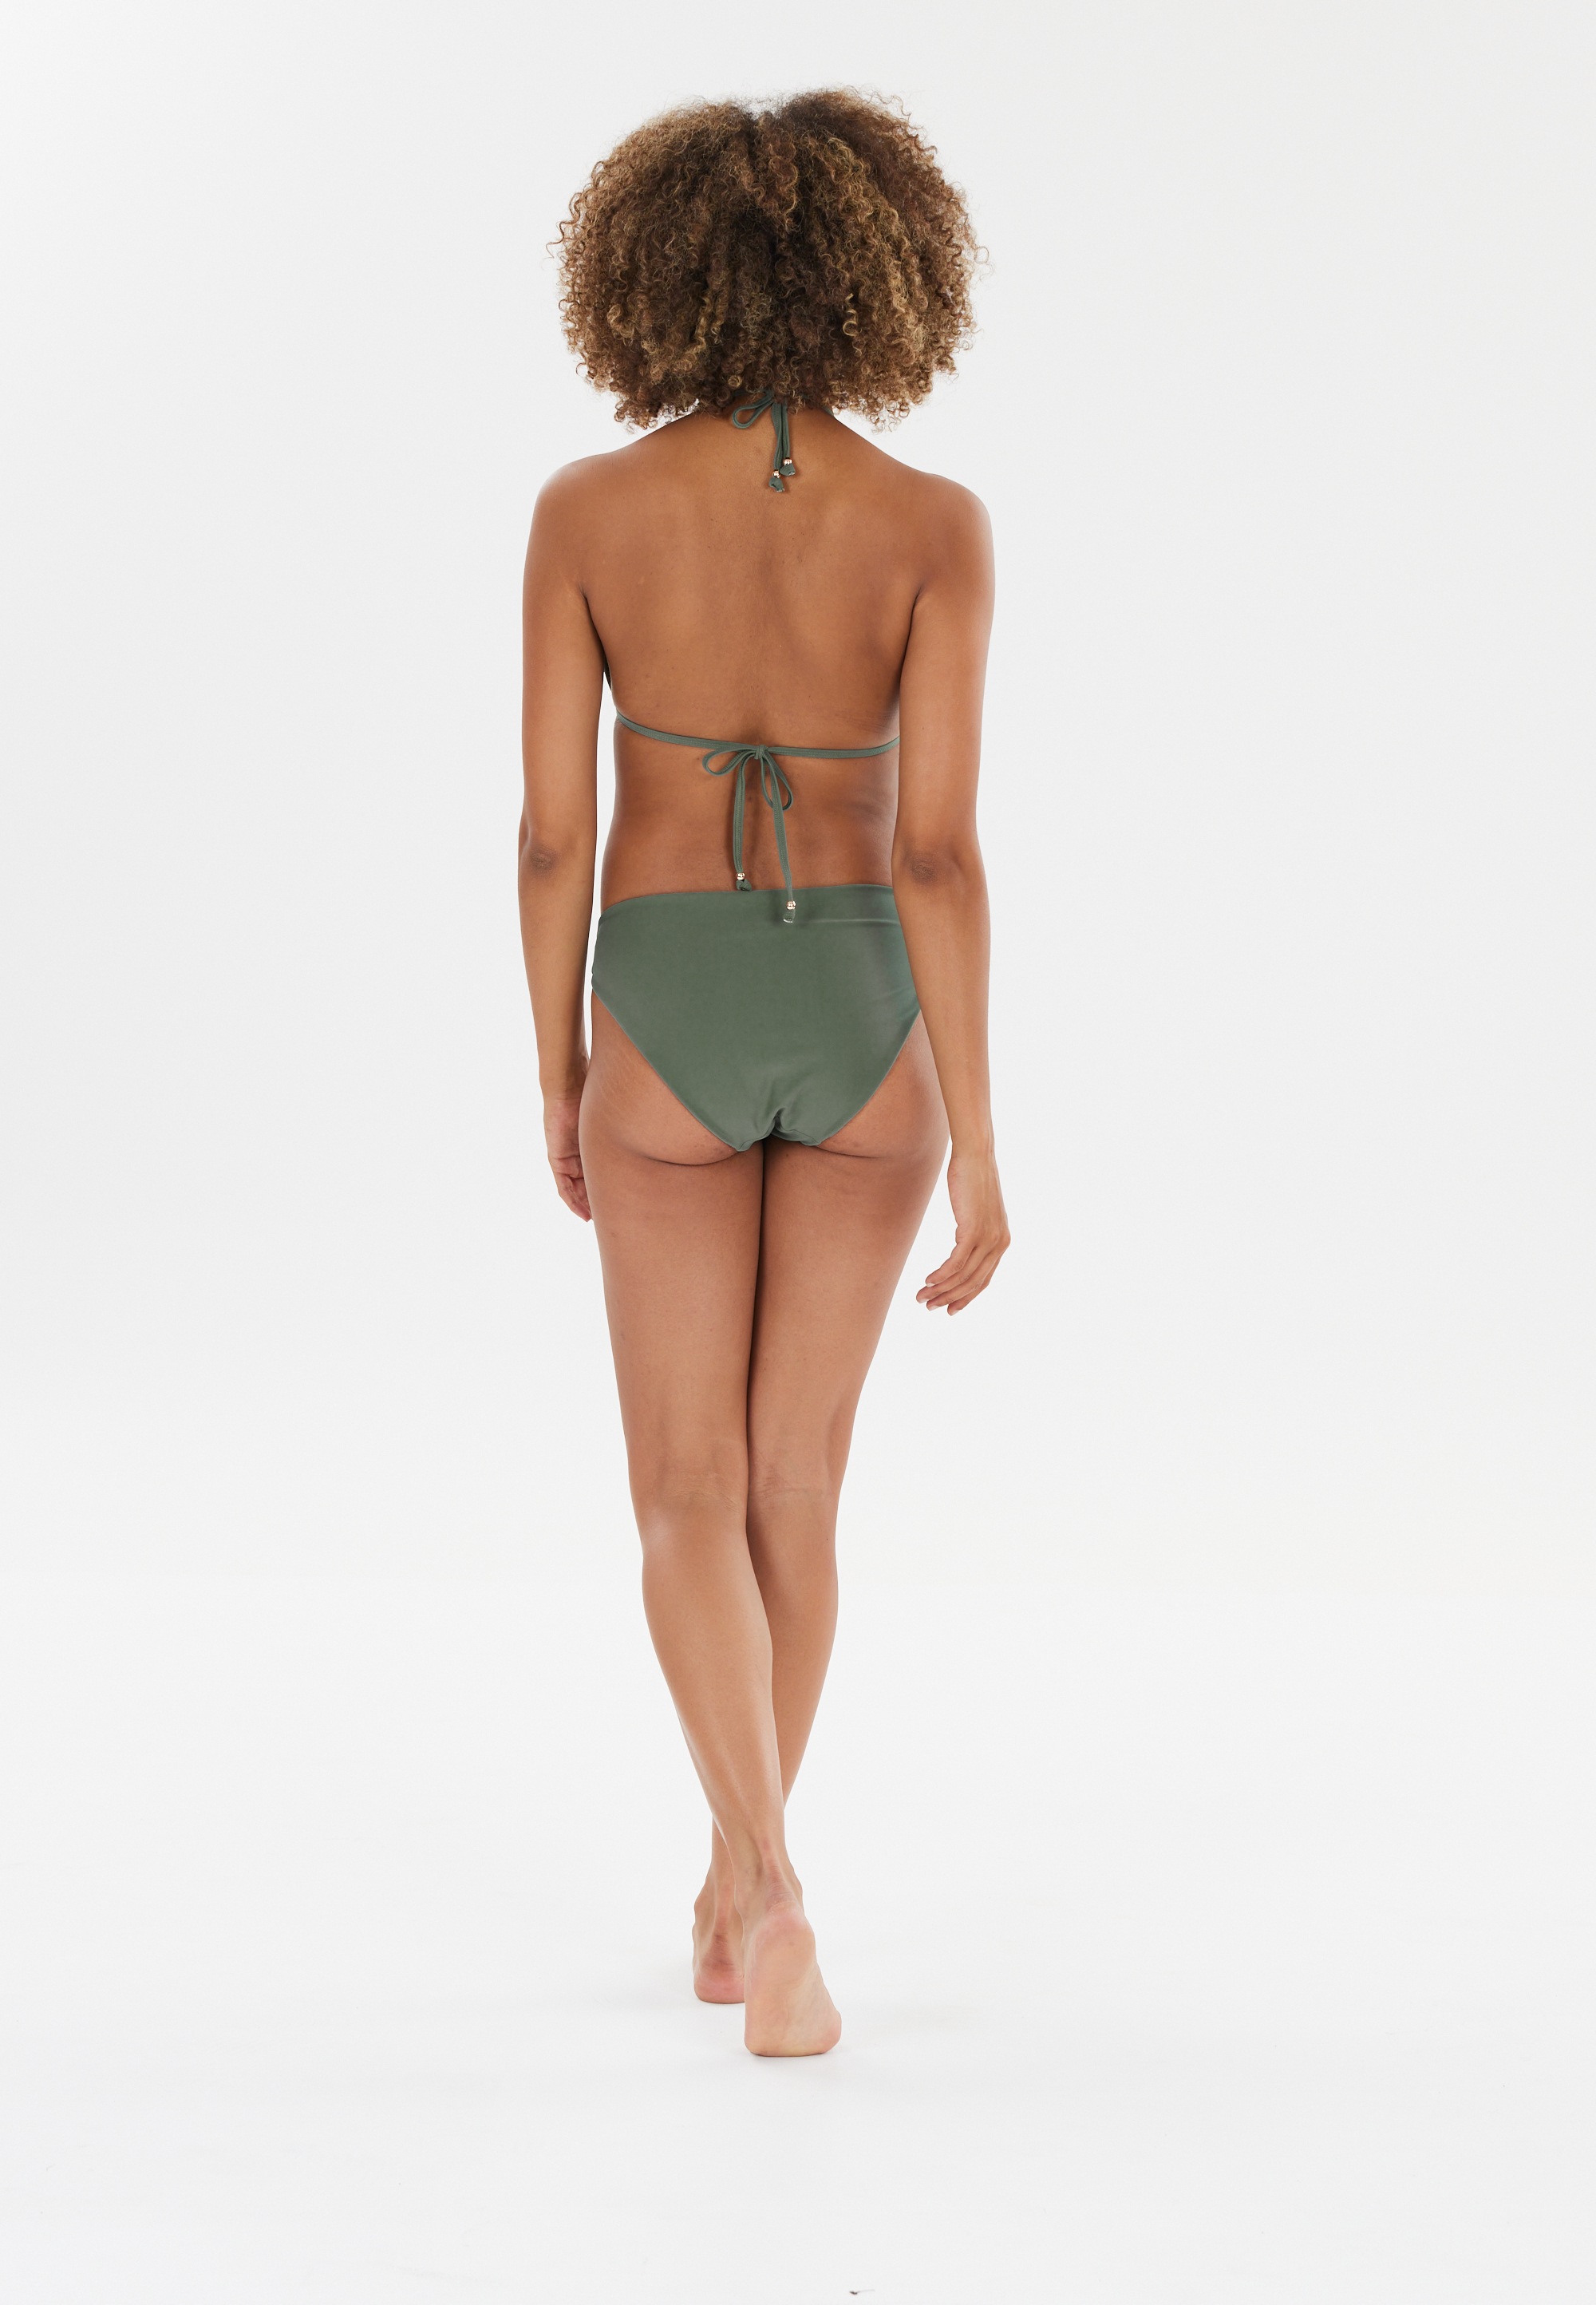 ATHLECIA Bikini-Hose »Bay«, (1 St., Panty), mit hohem Beinausschnitt und stretchy Qualität